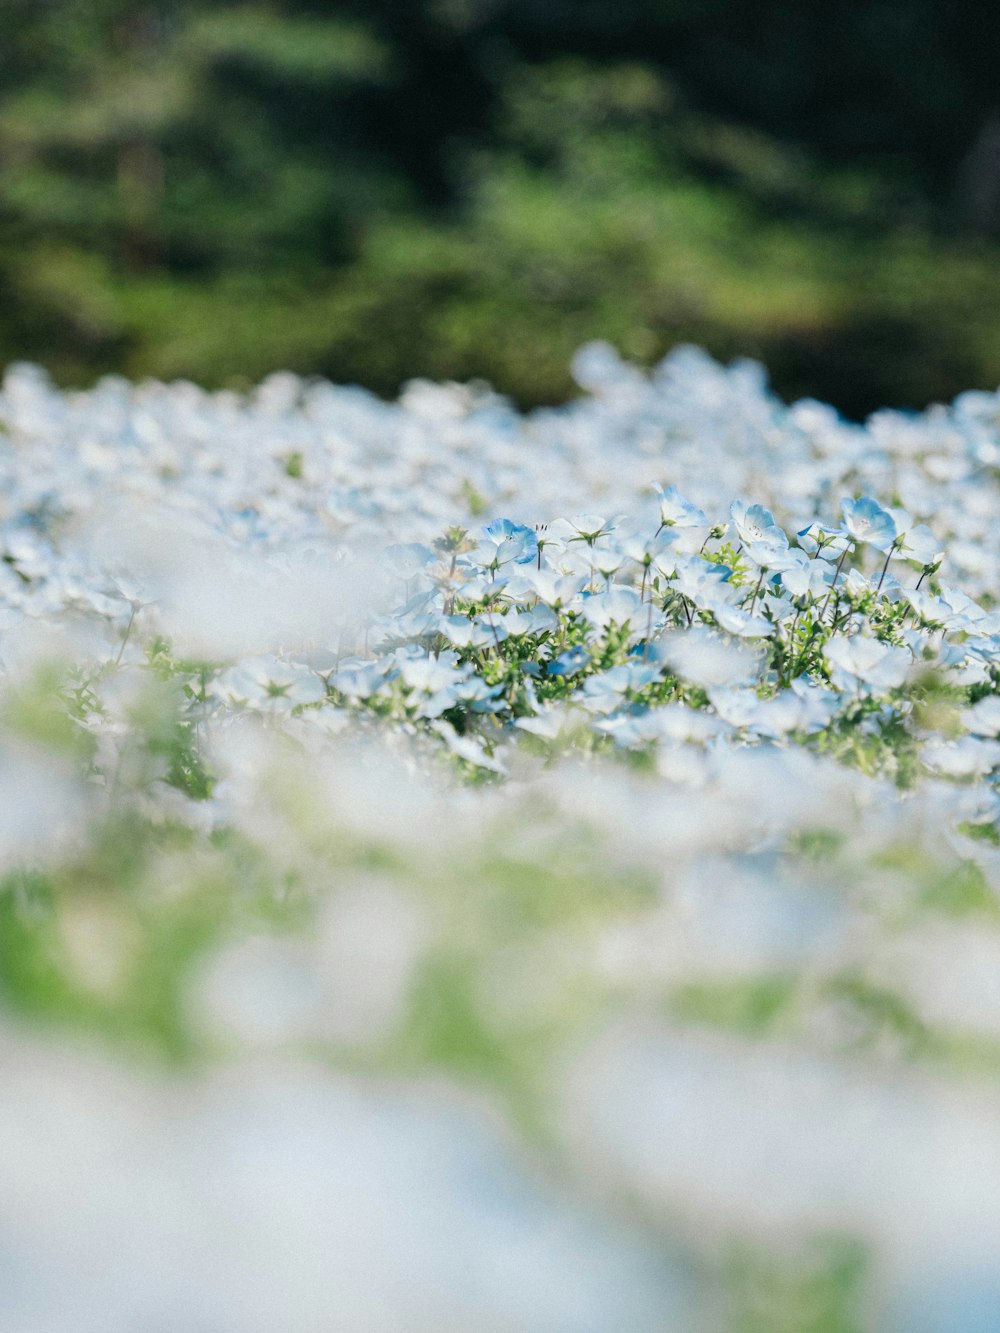 fiore bianco e blu nella fotografia ravvicinata durante il giorno